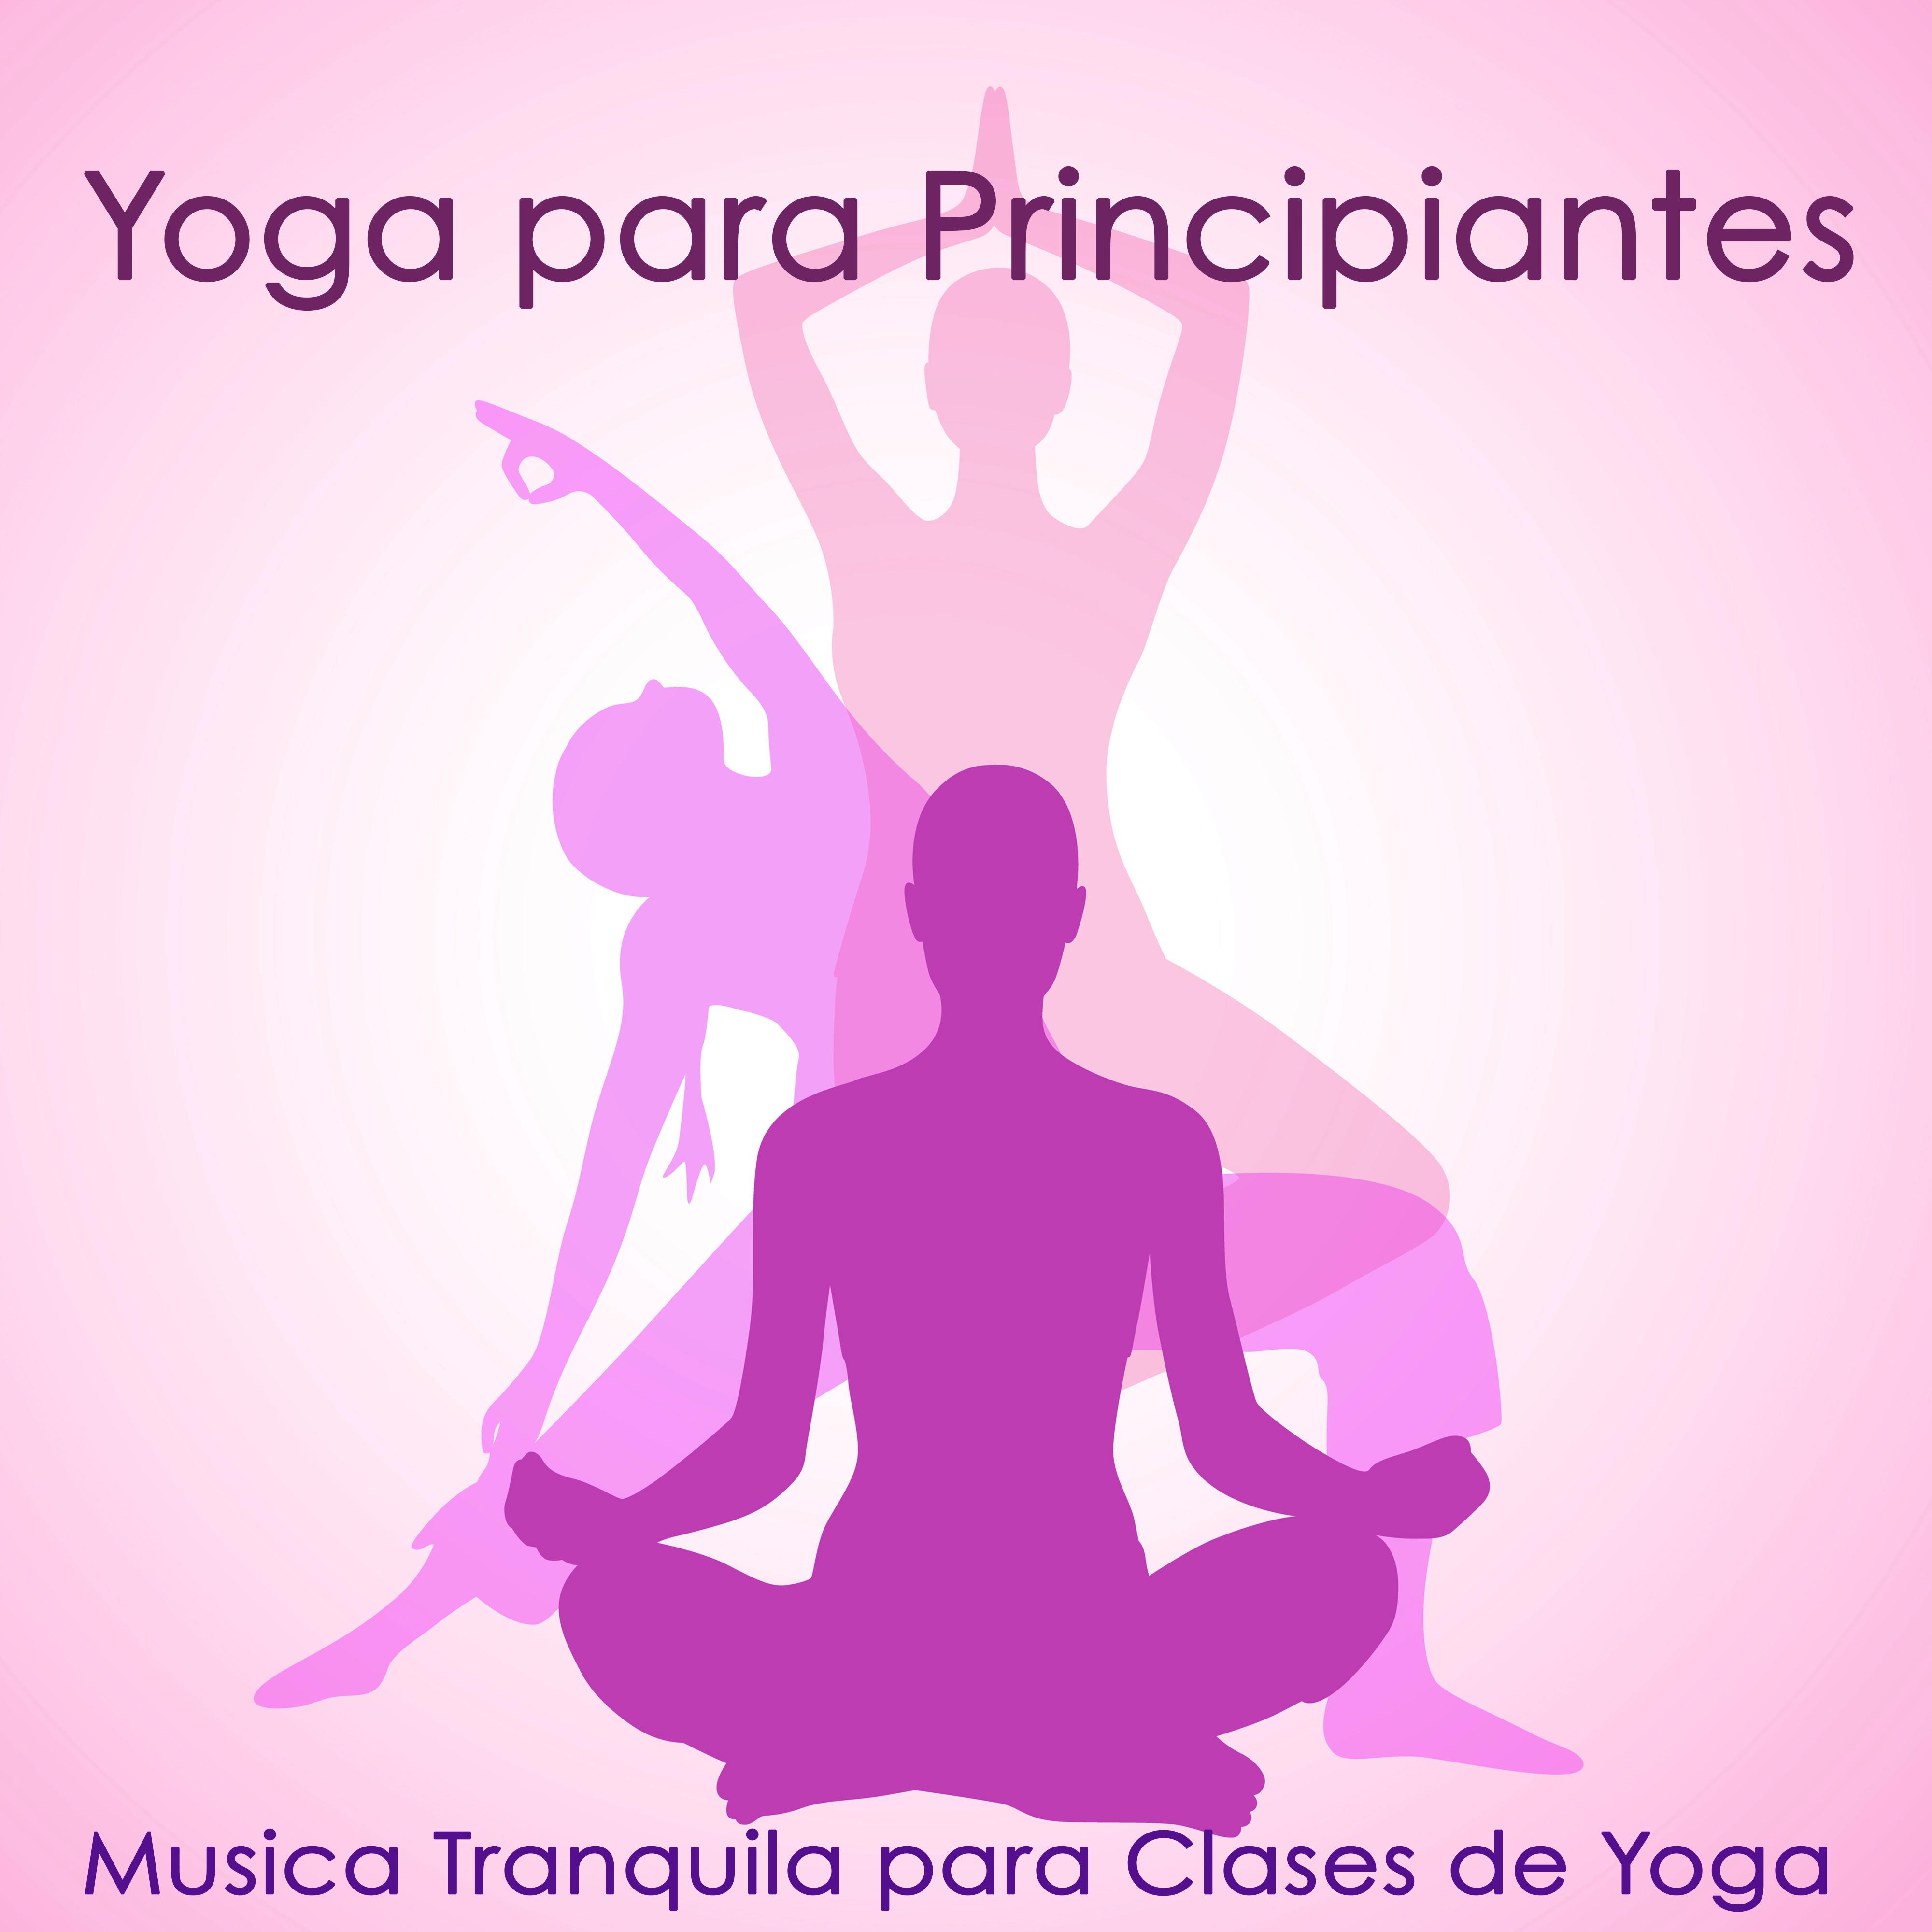 Yoga para Principiantes  Musica Tranquila para Clases de Yoga, Entrenamiento y Posturas de Yoga